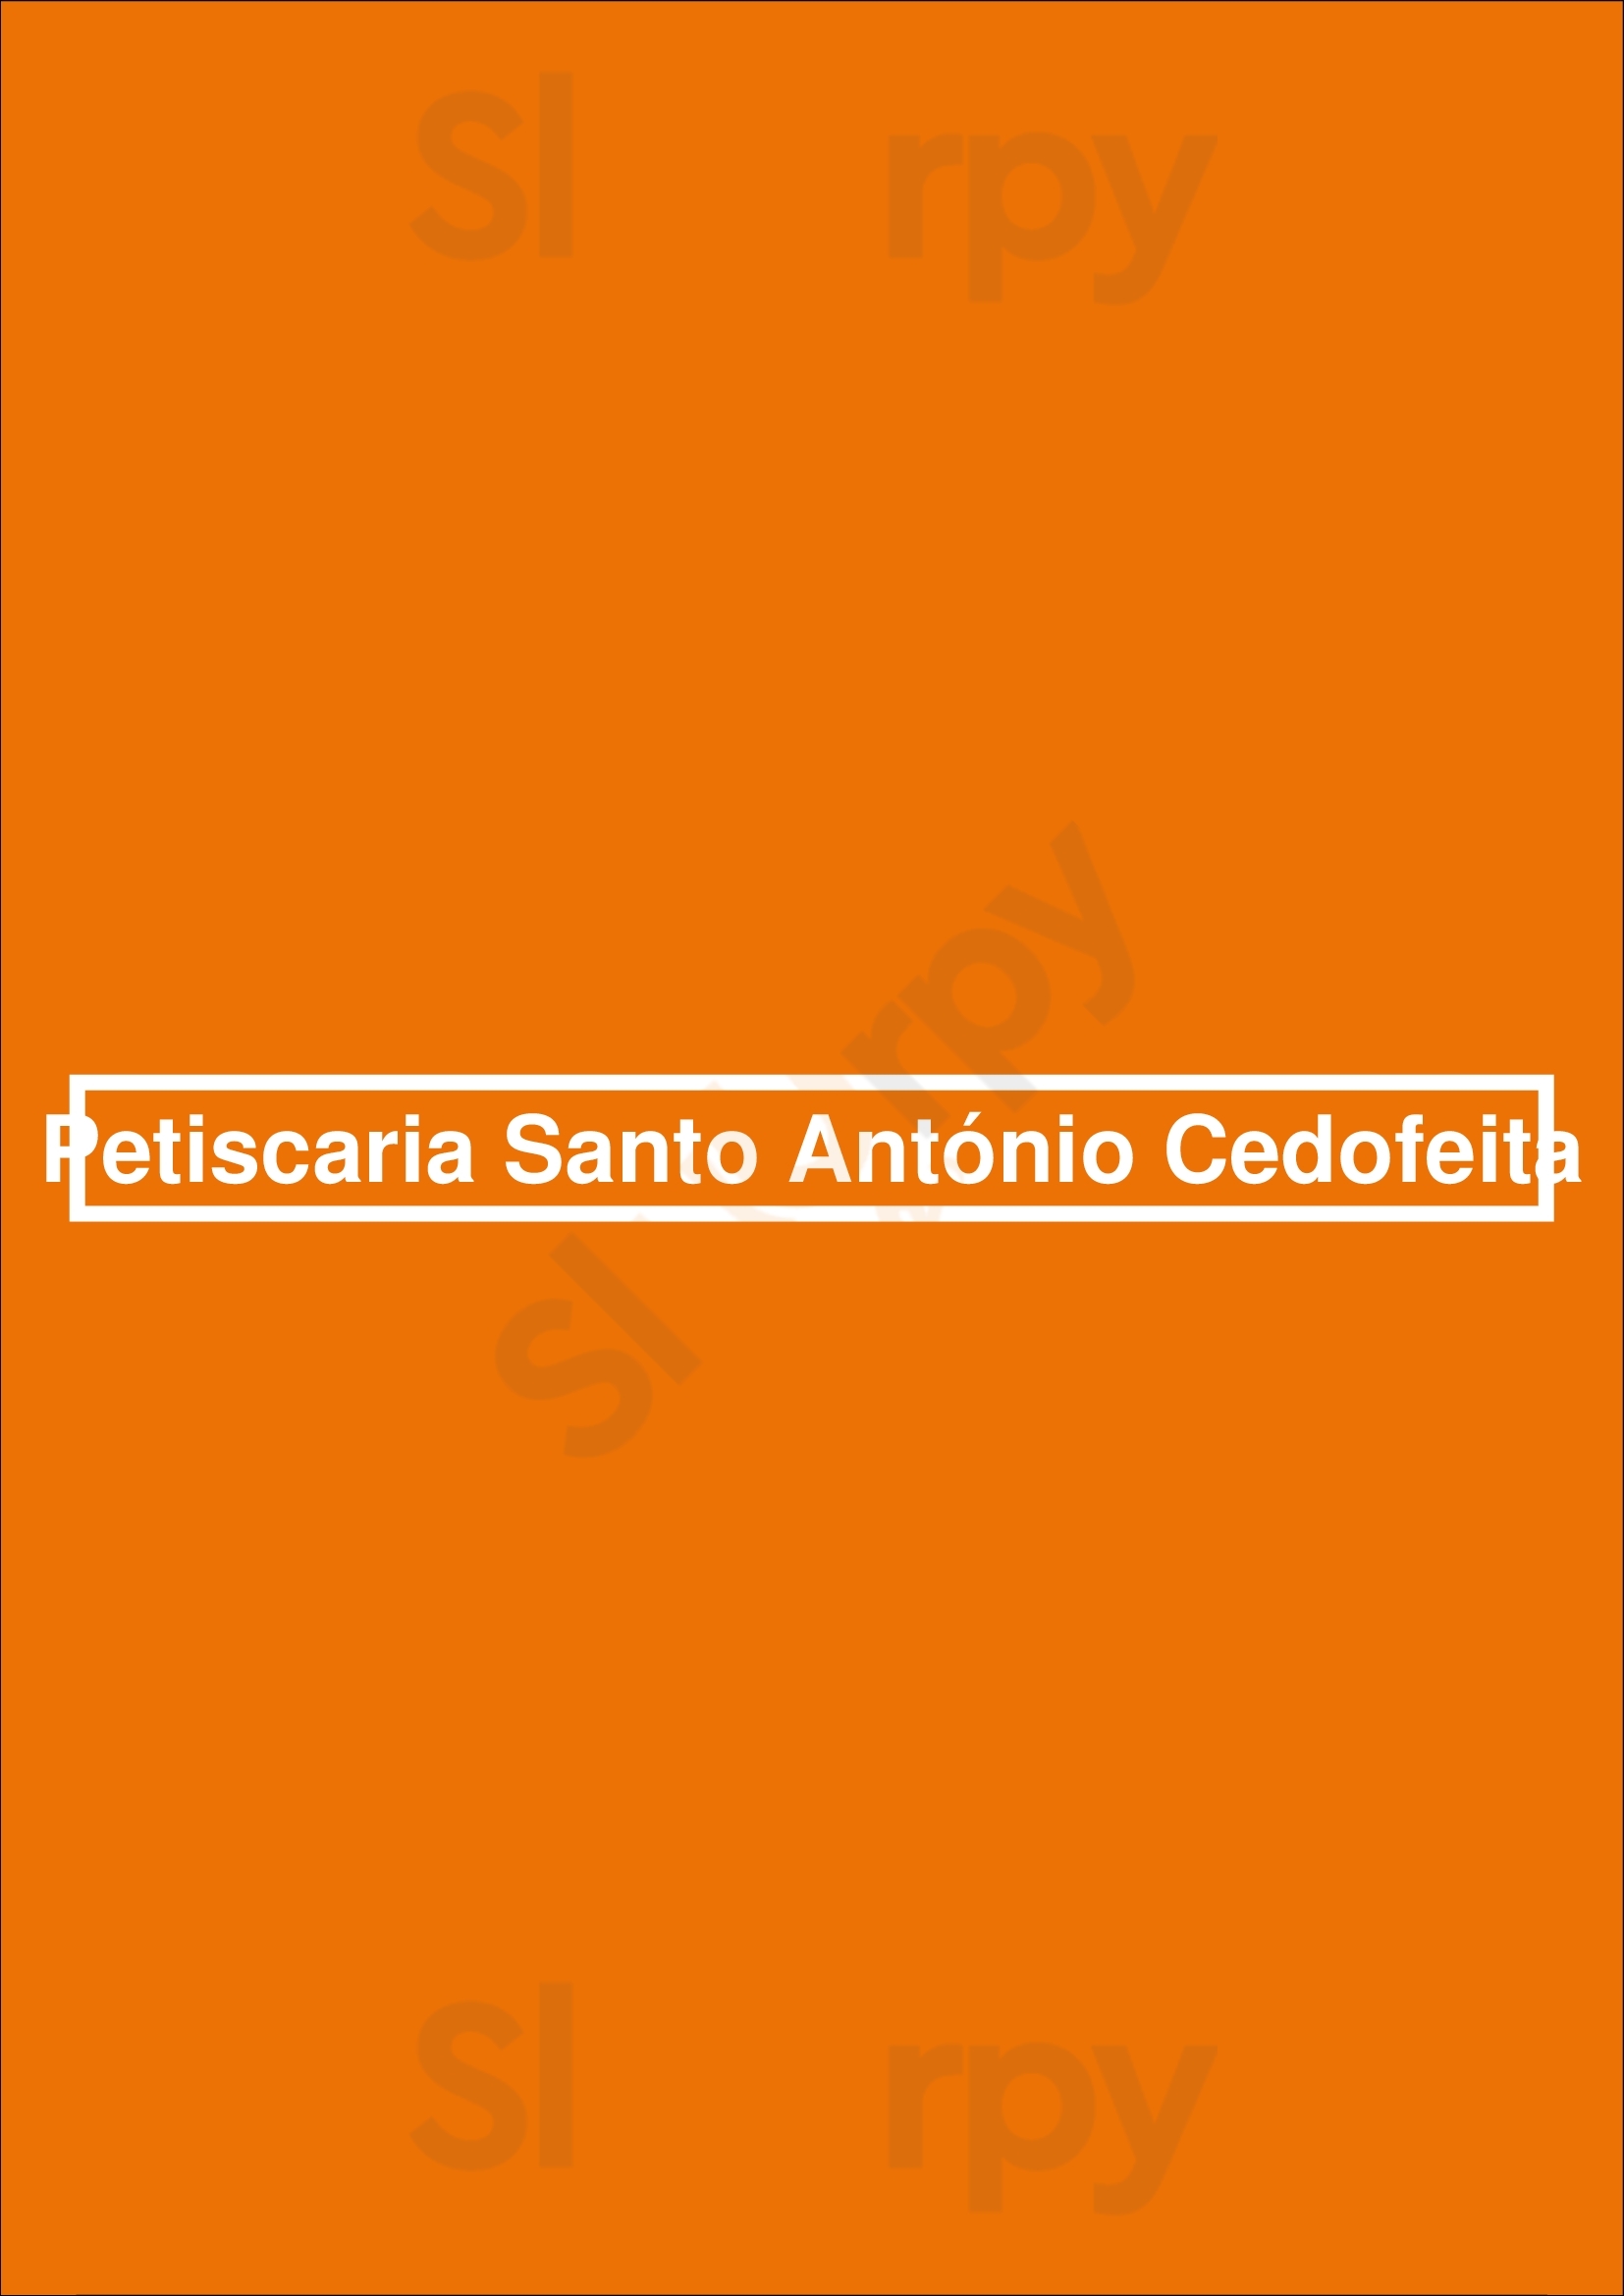 Petiscaria Santo António Cedofeita Porto Menu - 1